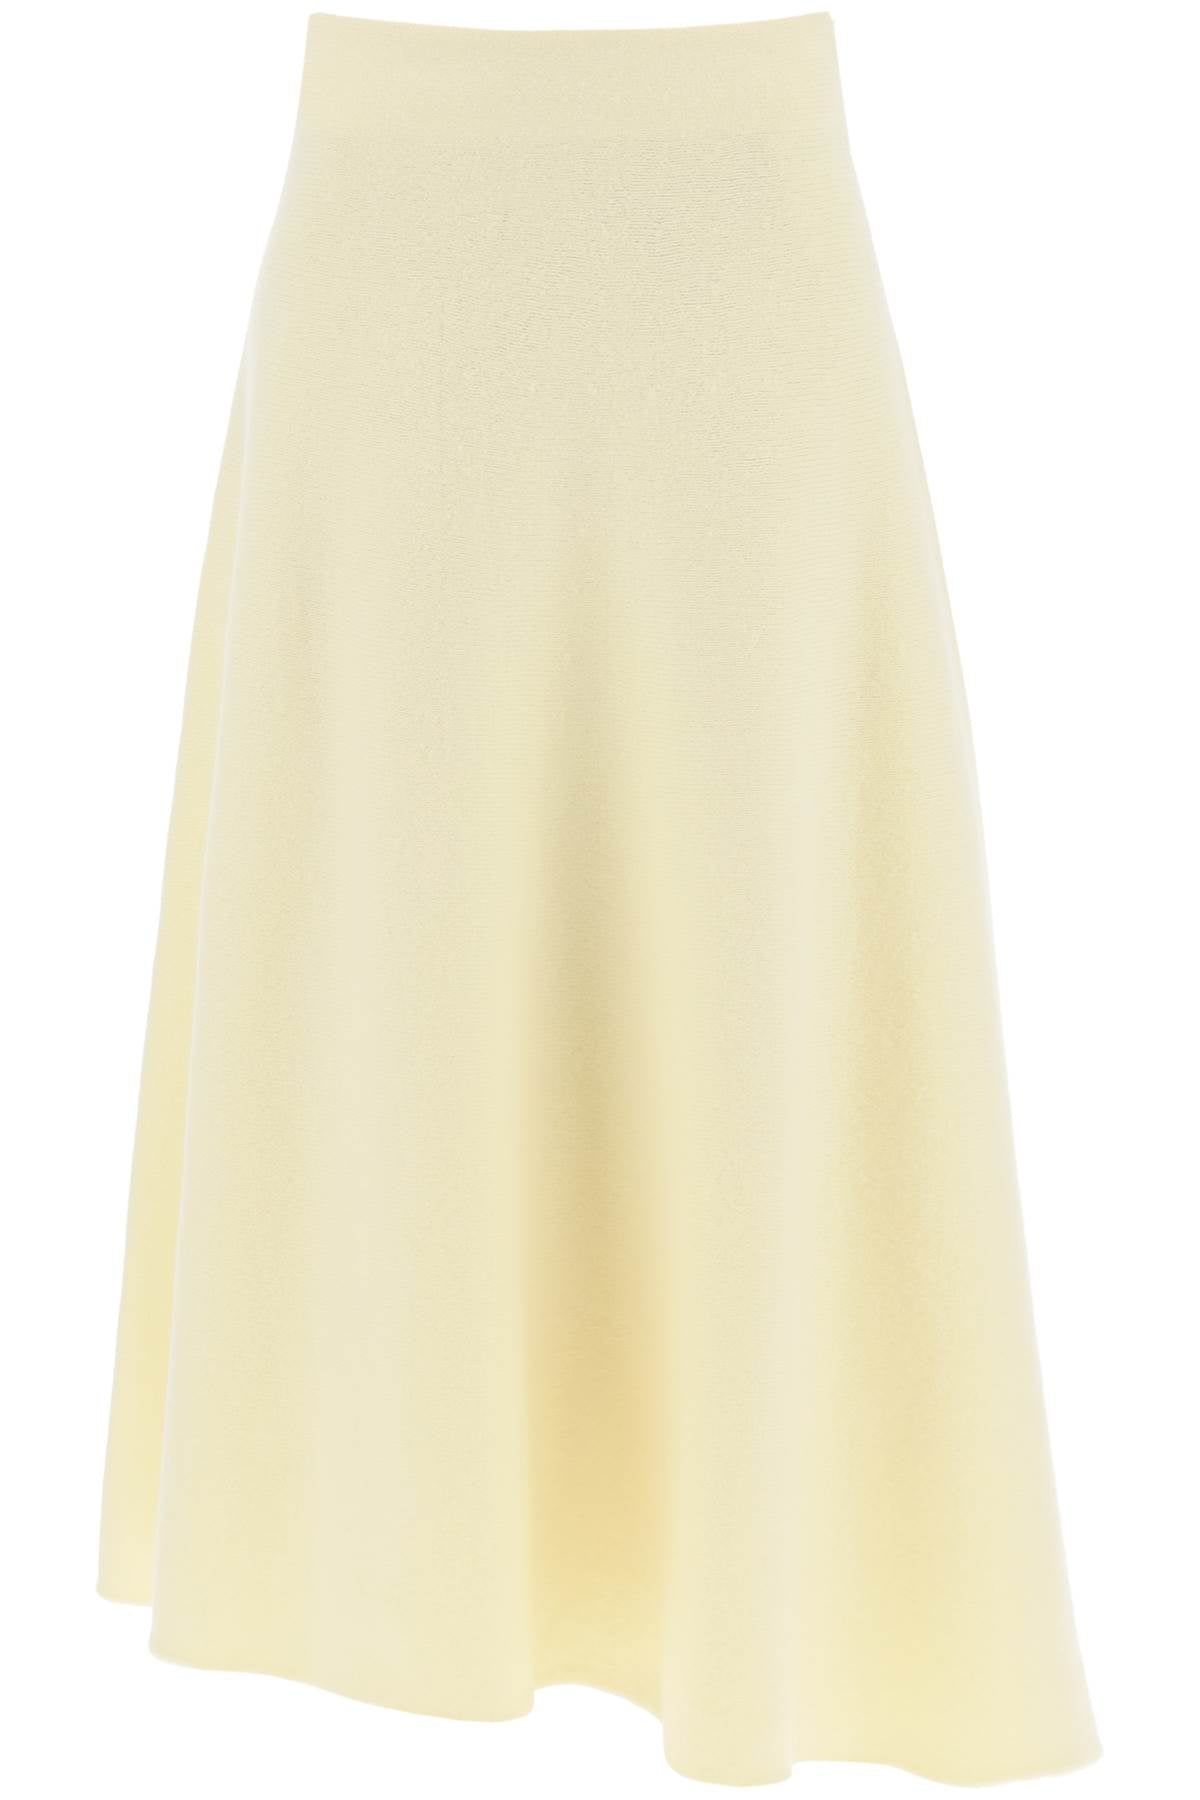 Yellow Asymmetric Midi Skirt - FW23 Collection